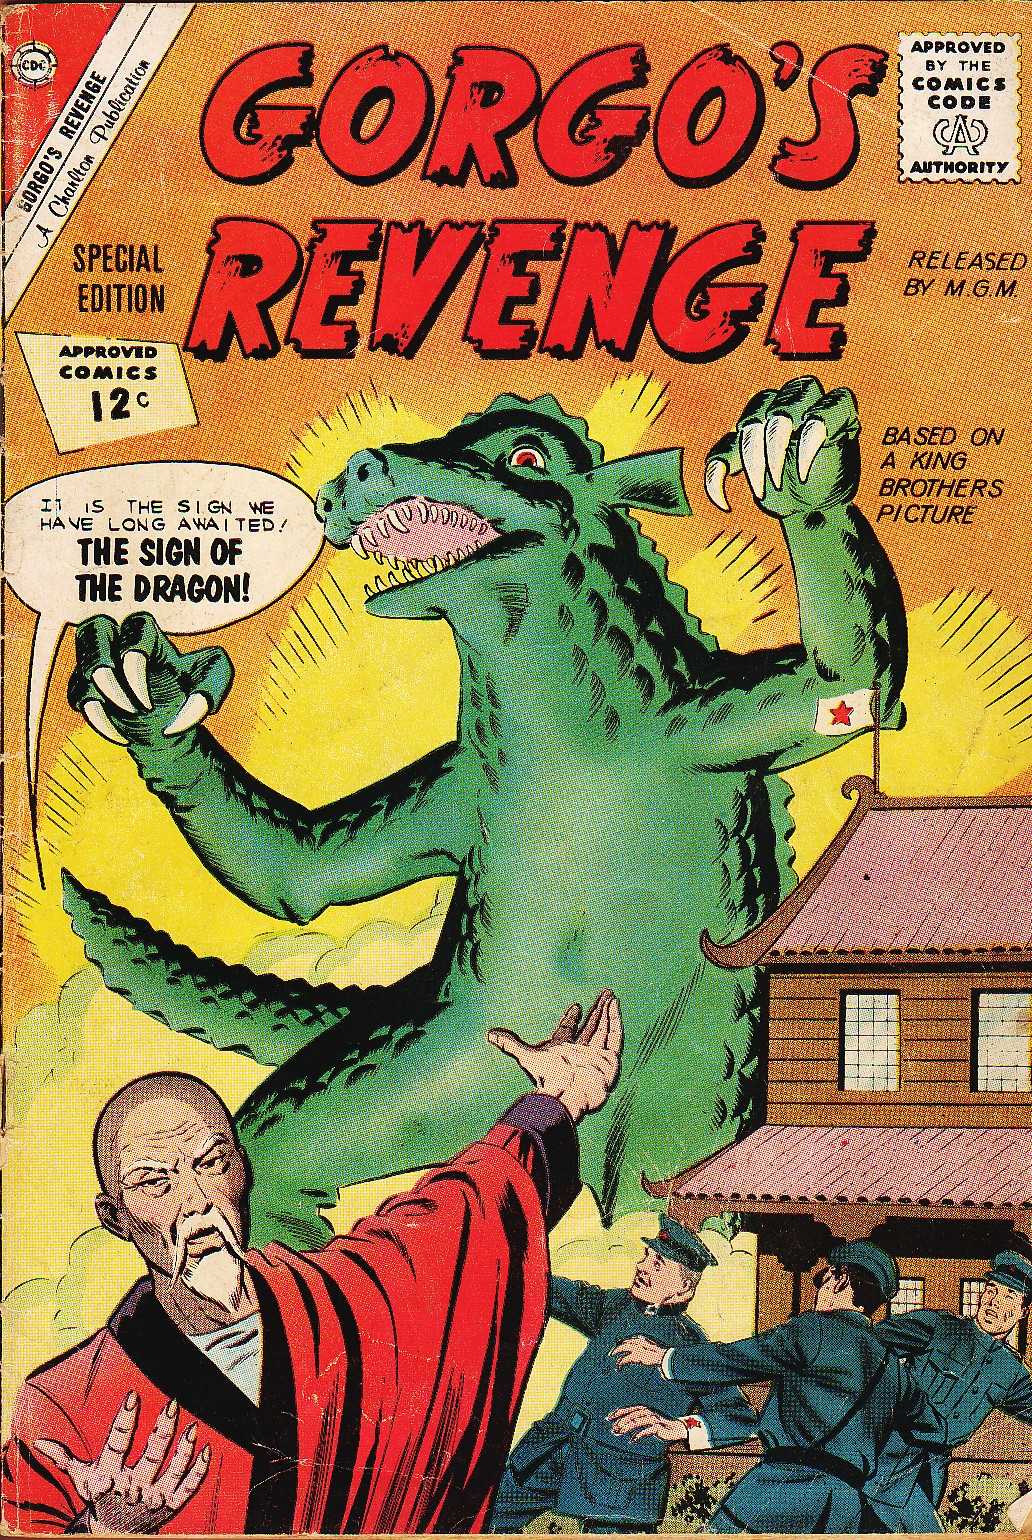 Read online Gorgo's Revenge comic -  Issue #1 - 1